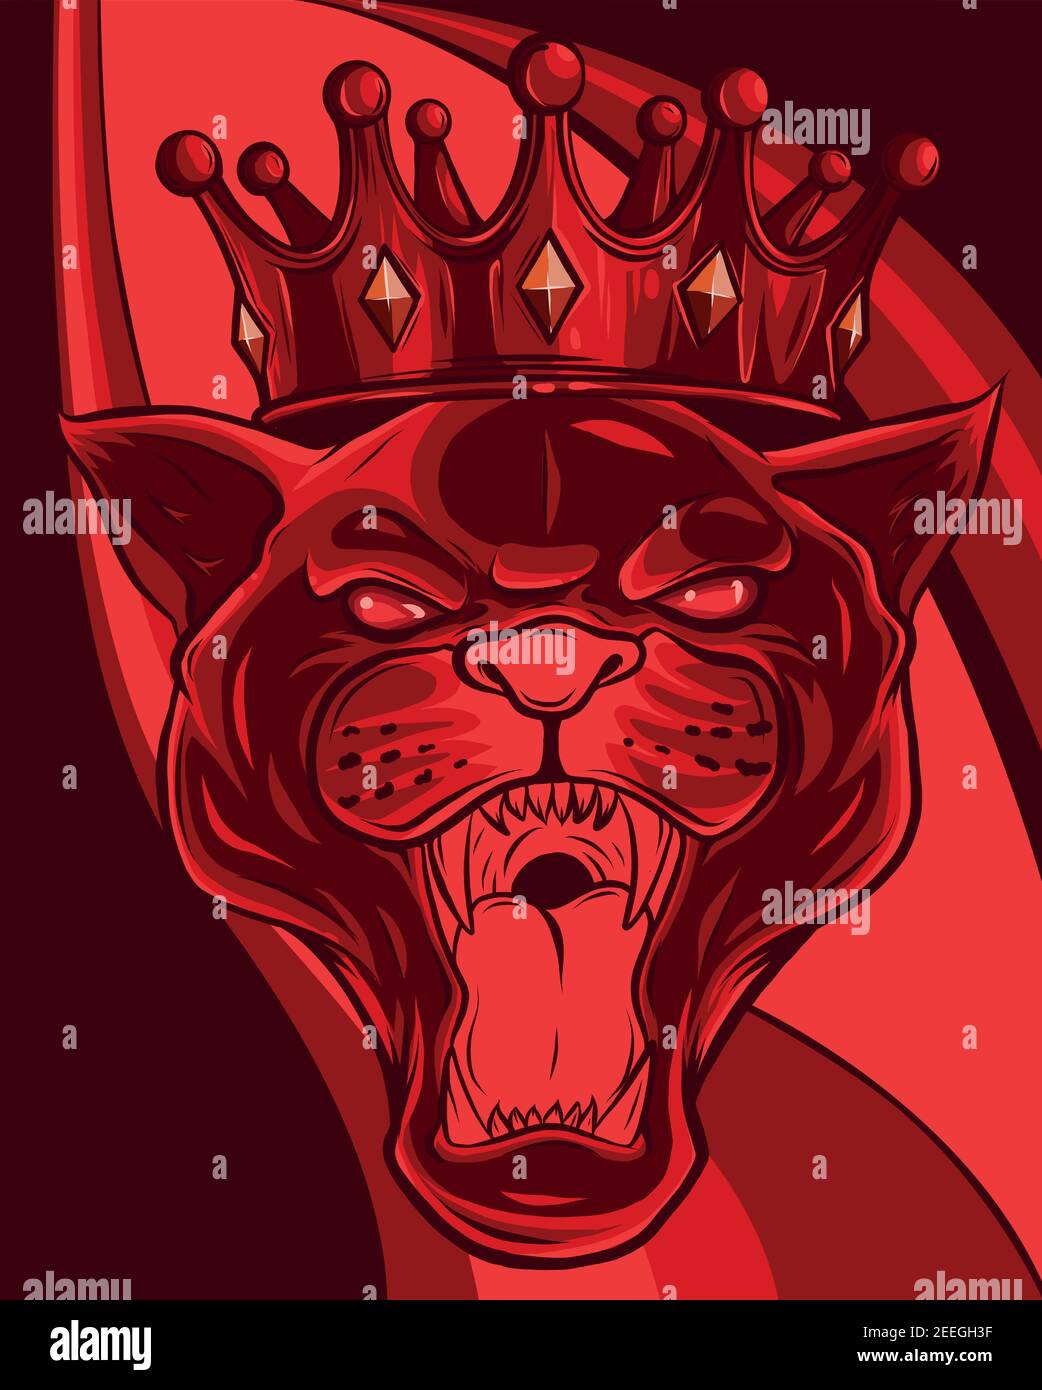 Tête Panther dans la couronne. Illustration vectorielle Illustration de Vecteur